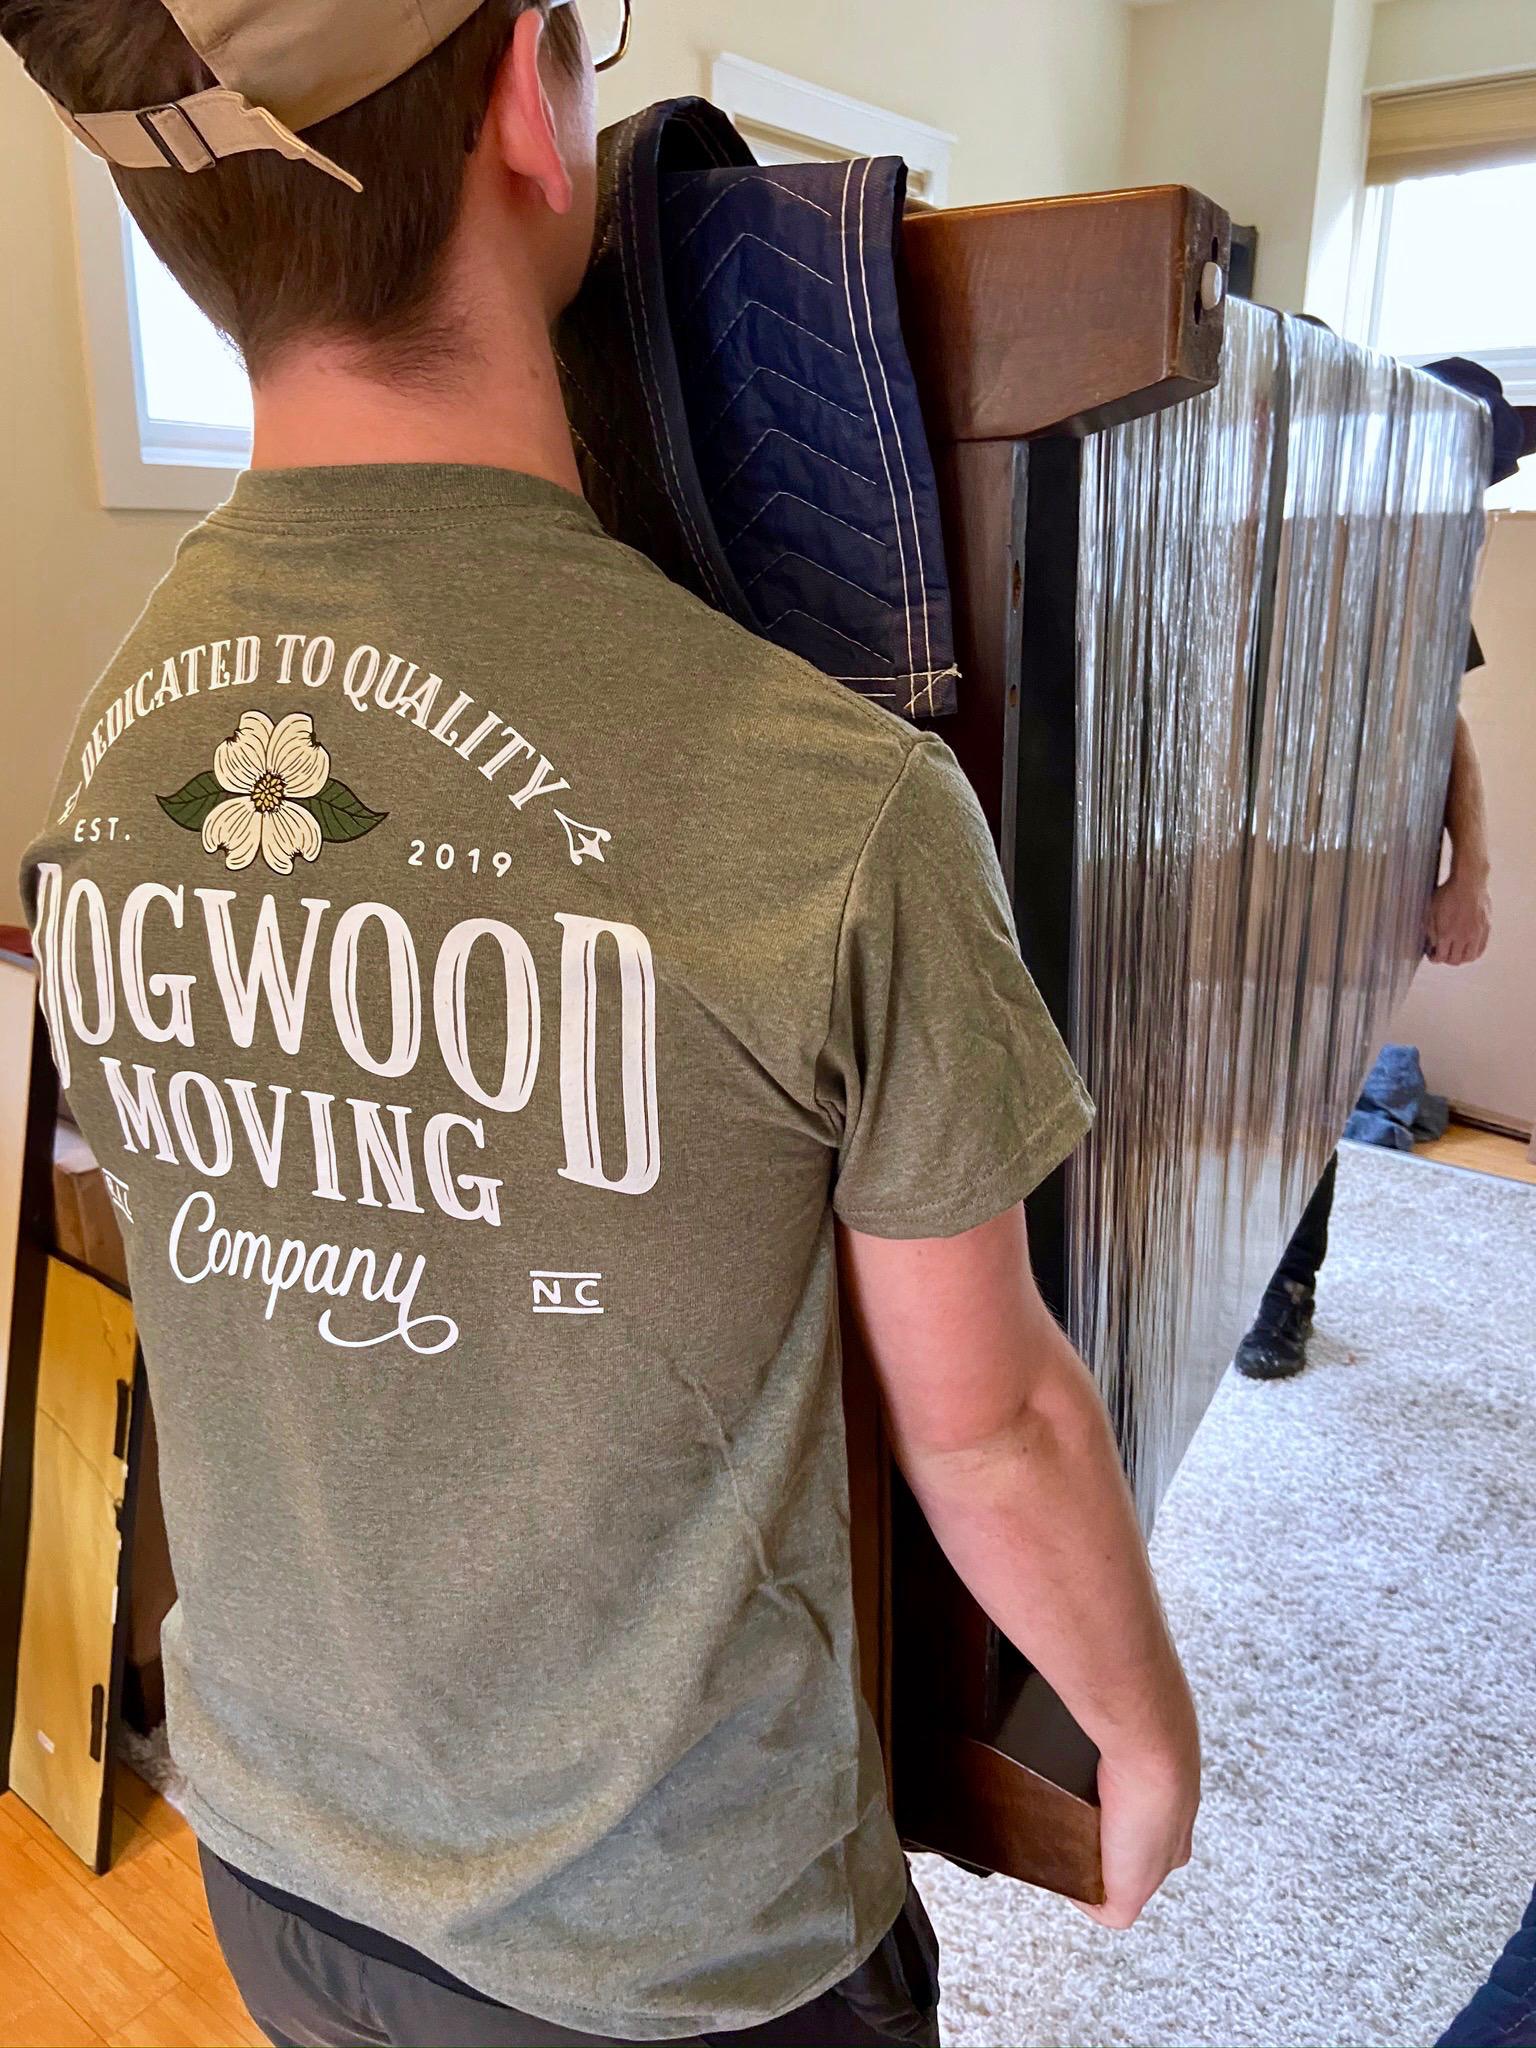 Dogwood Moving Co. Photo